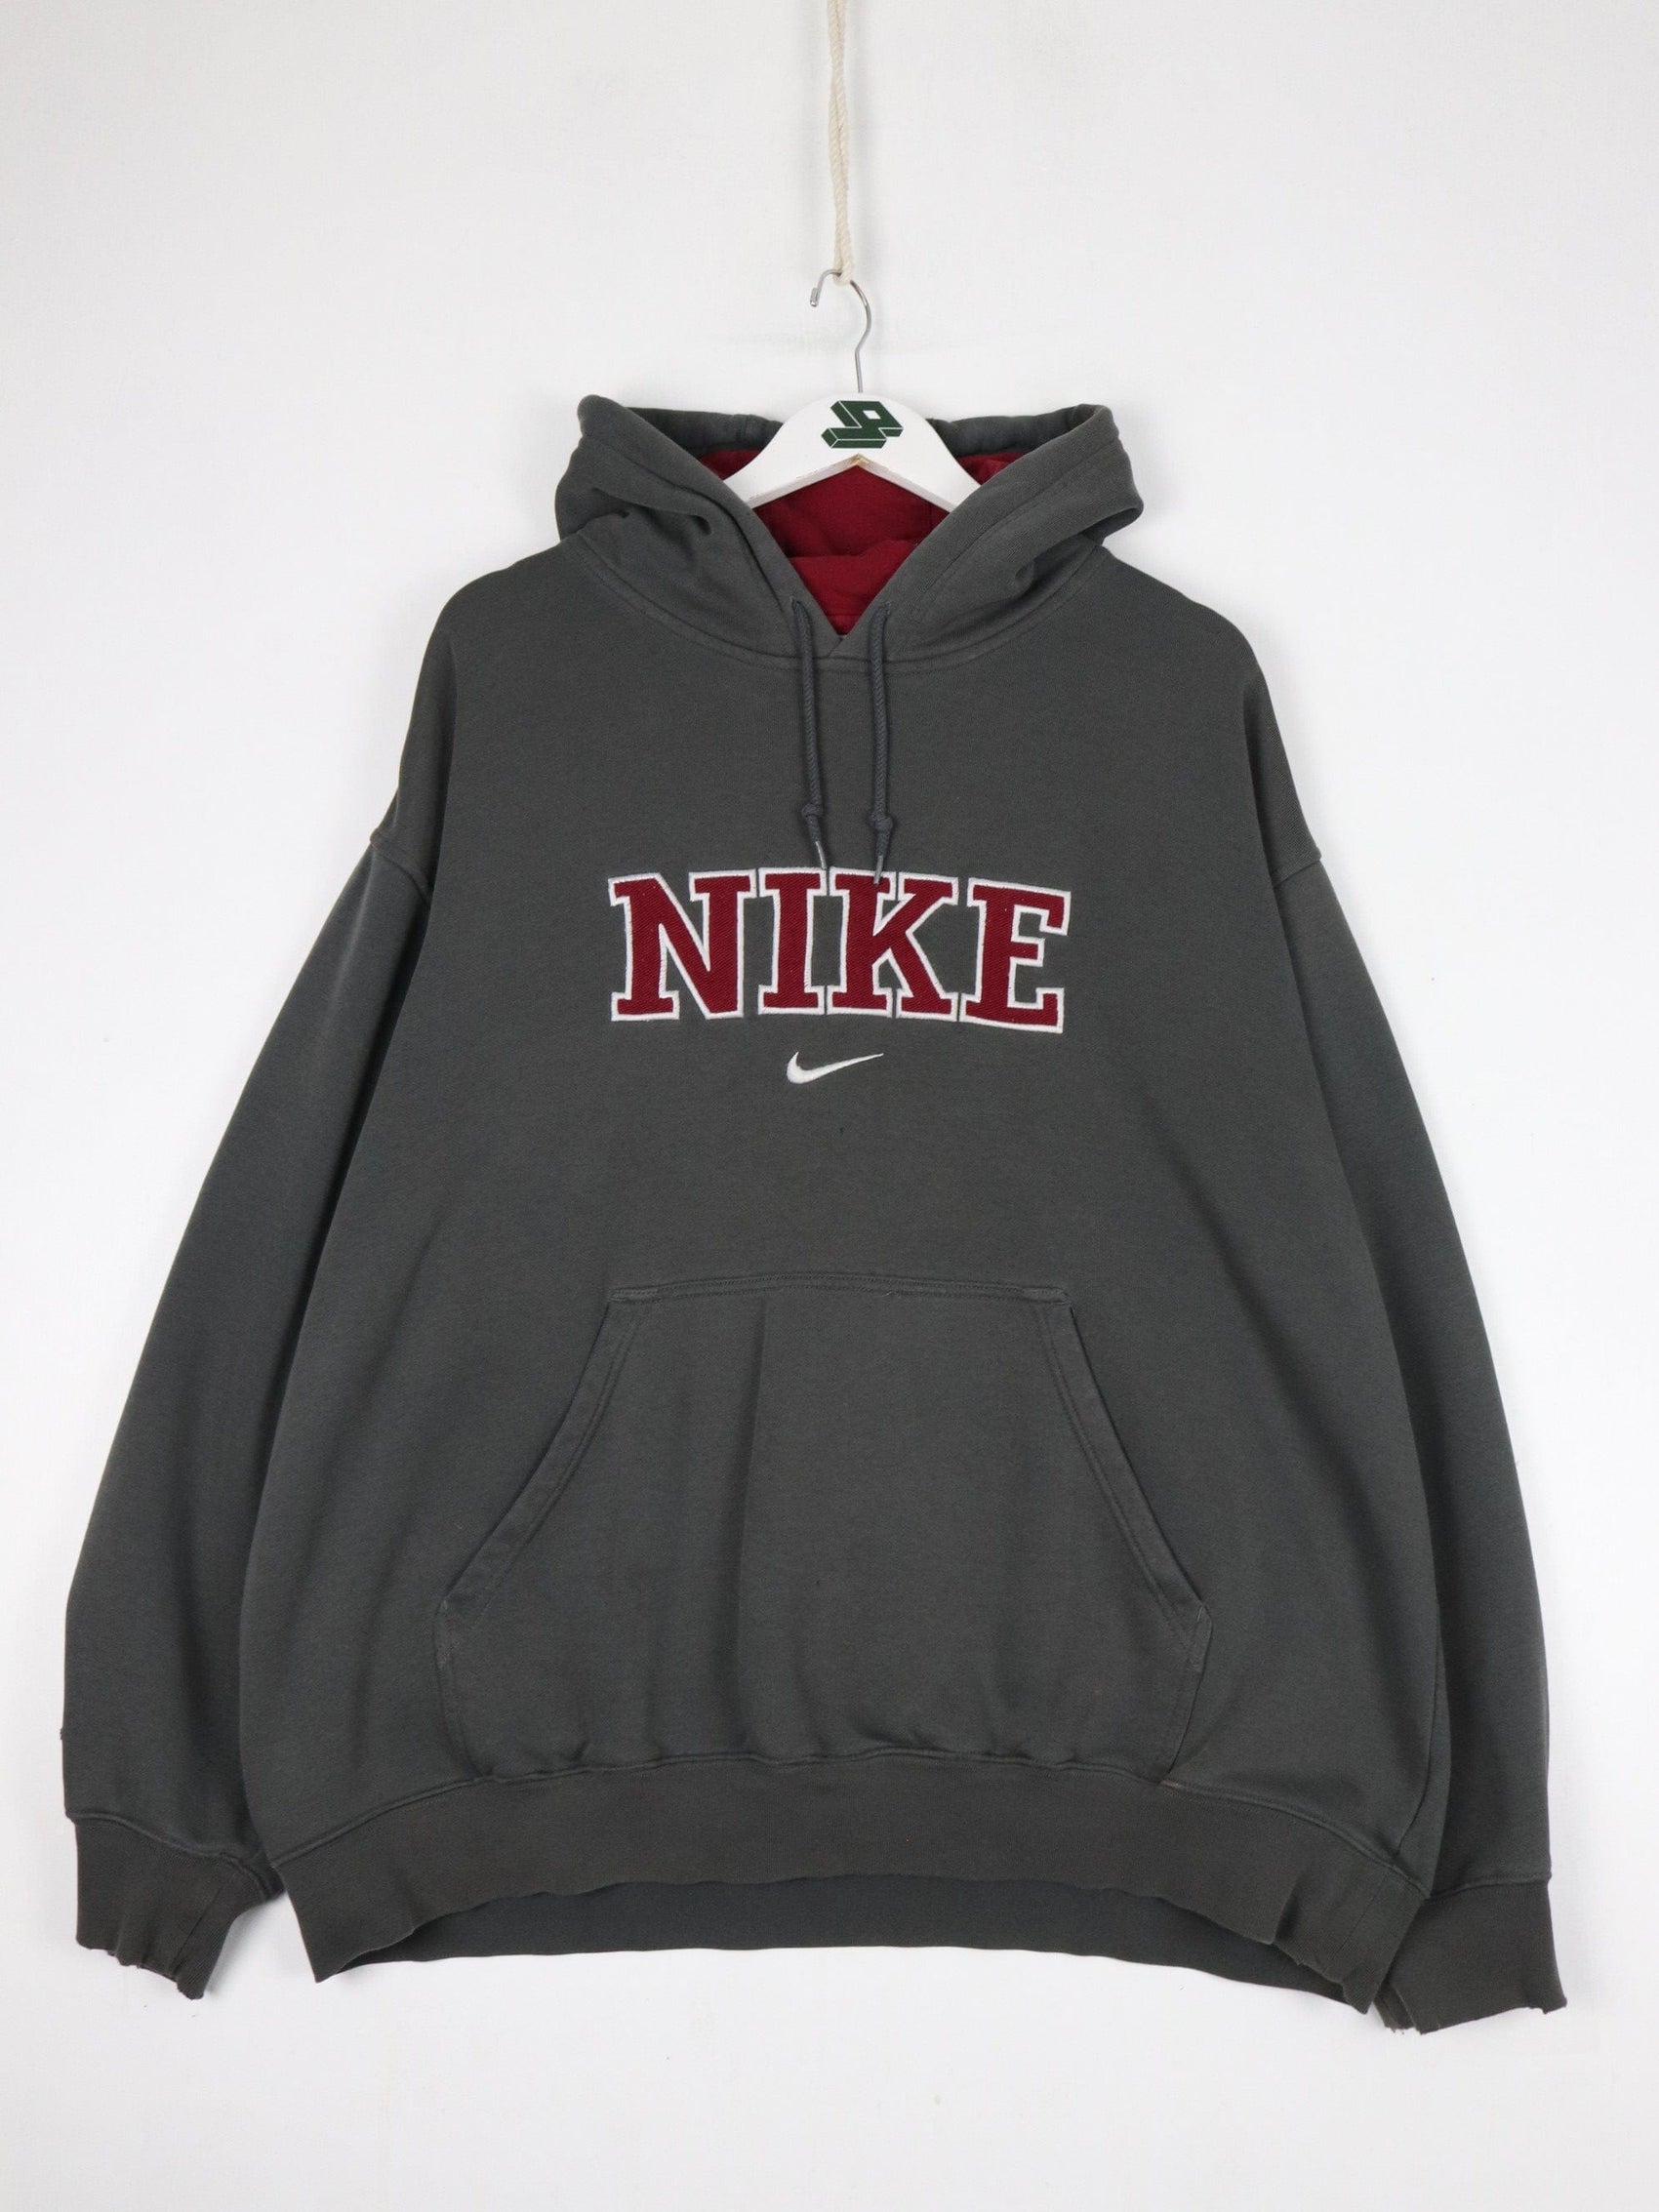 Nike Sweatshirts & Hoodies Vintage Nike Sweatshirt Fits Mens XL Grey Swoosh Hoodie